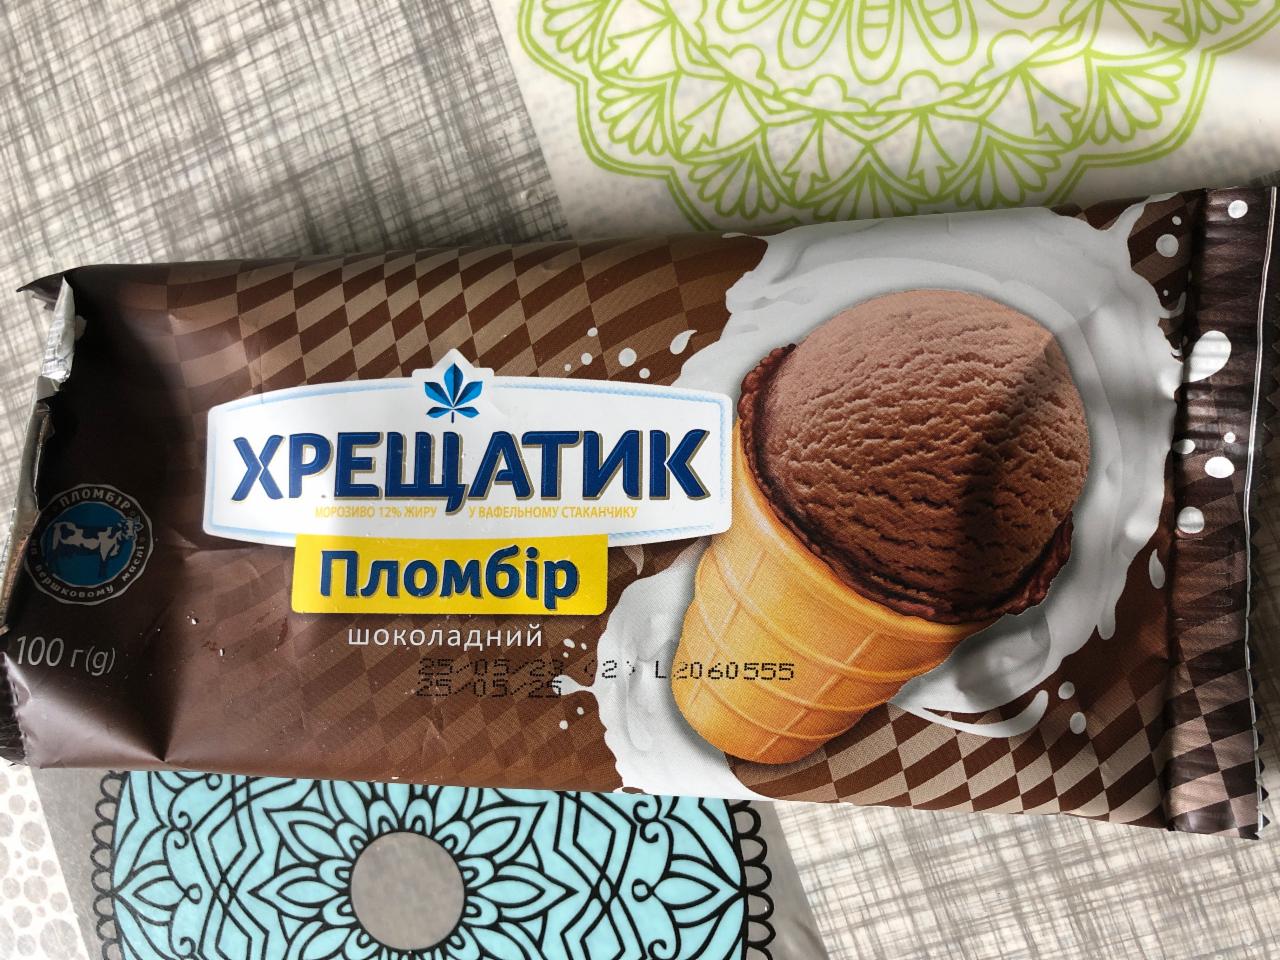 Фото - Морозиво 12% у вафельному стаканчику шоколадний пломбір Хрещатик Хладопром